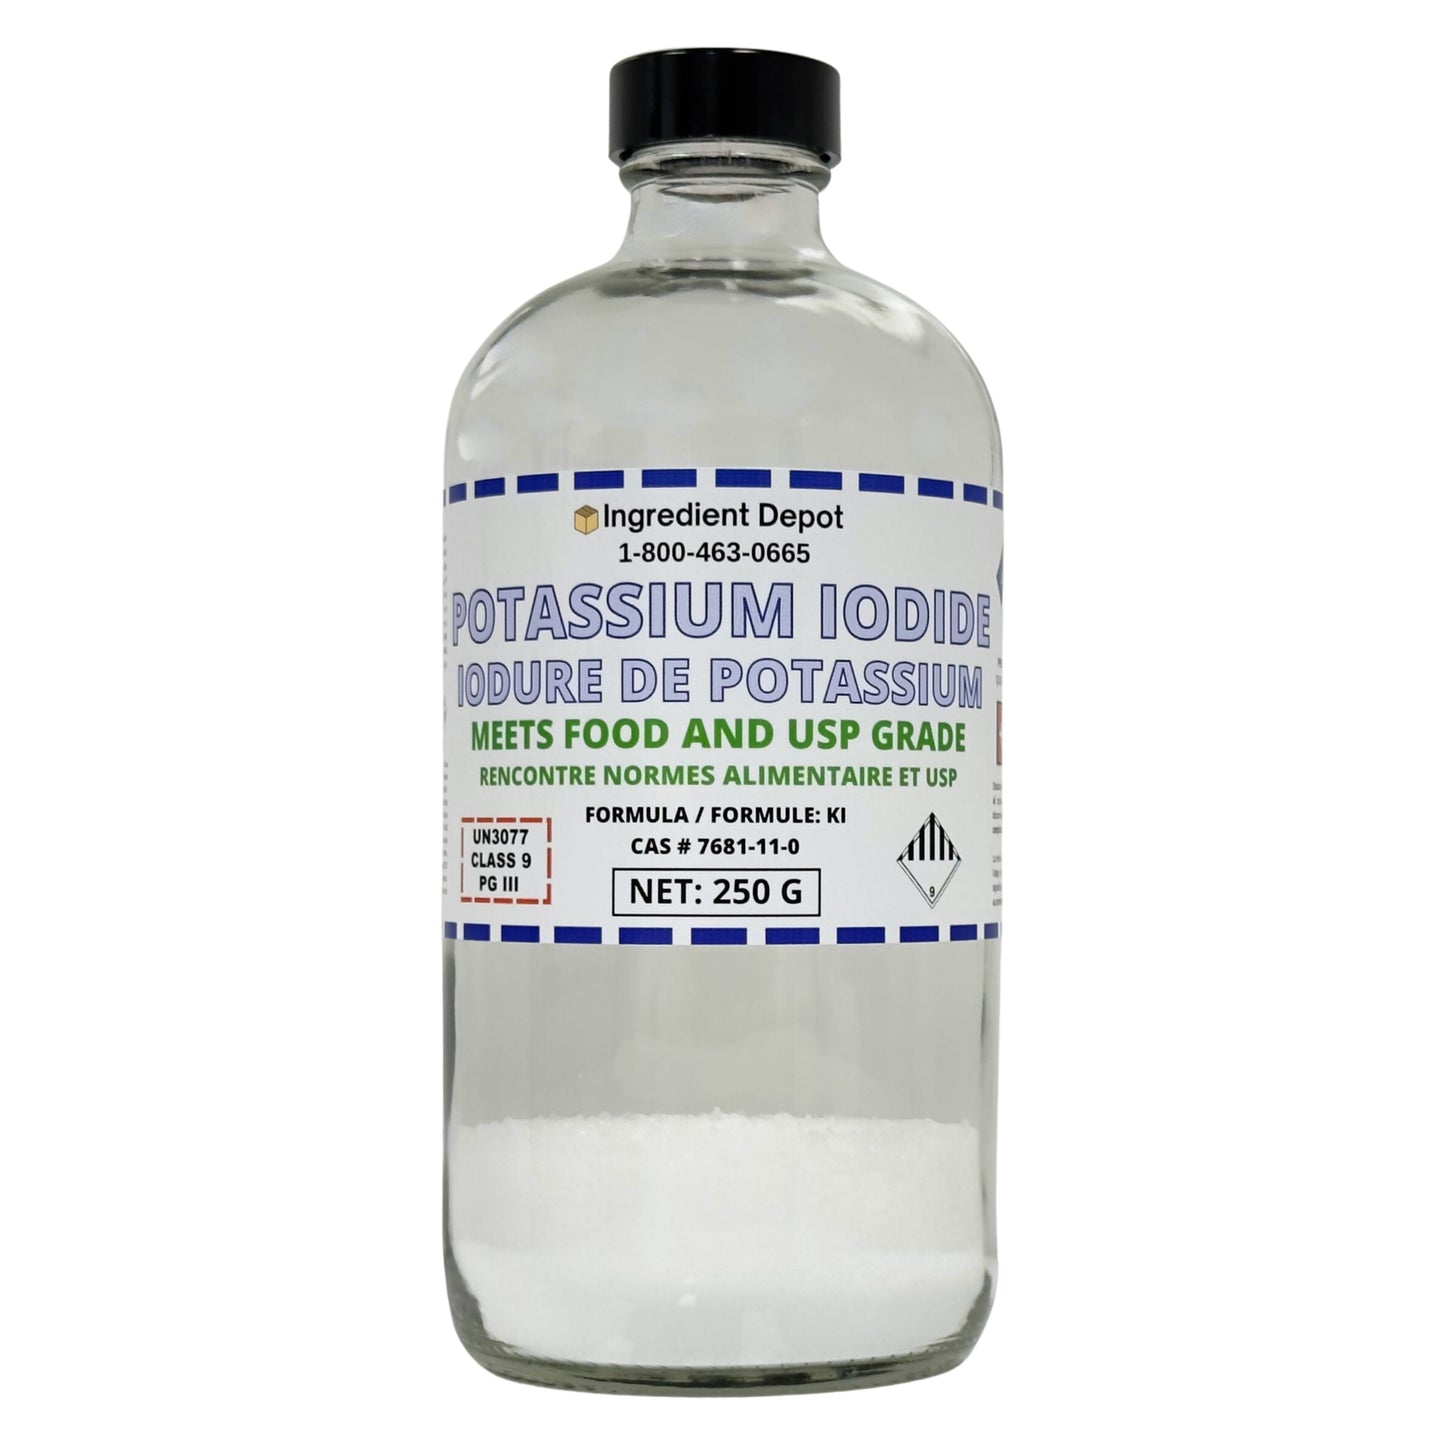 Potassium Iodide +99% USP Grade 250g - IngredientDepot.com